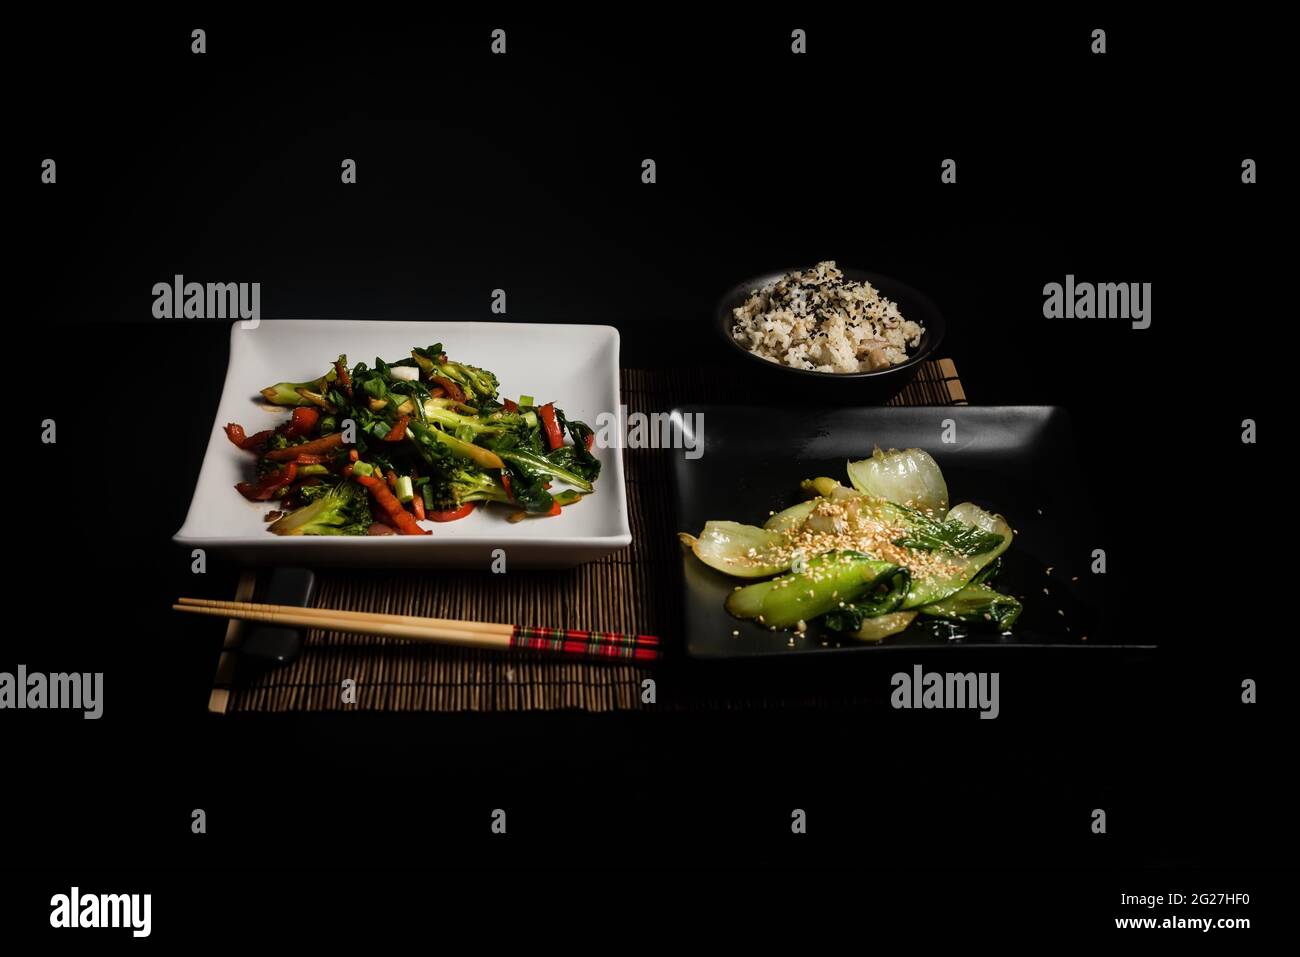 Cuisine végétarienne asiatique sur fond sombre vue de dessus. Emballez les légumes et le moule à riz pour faire sauter le choy sur une table noire Banque D'Images